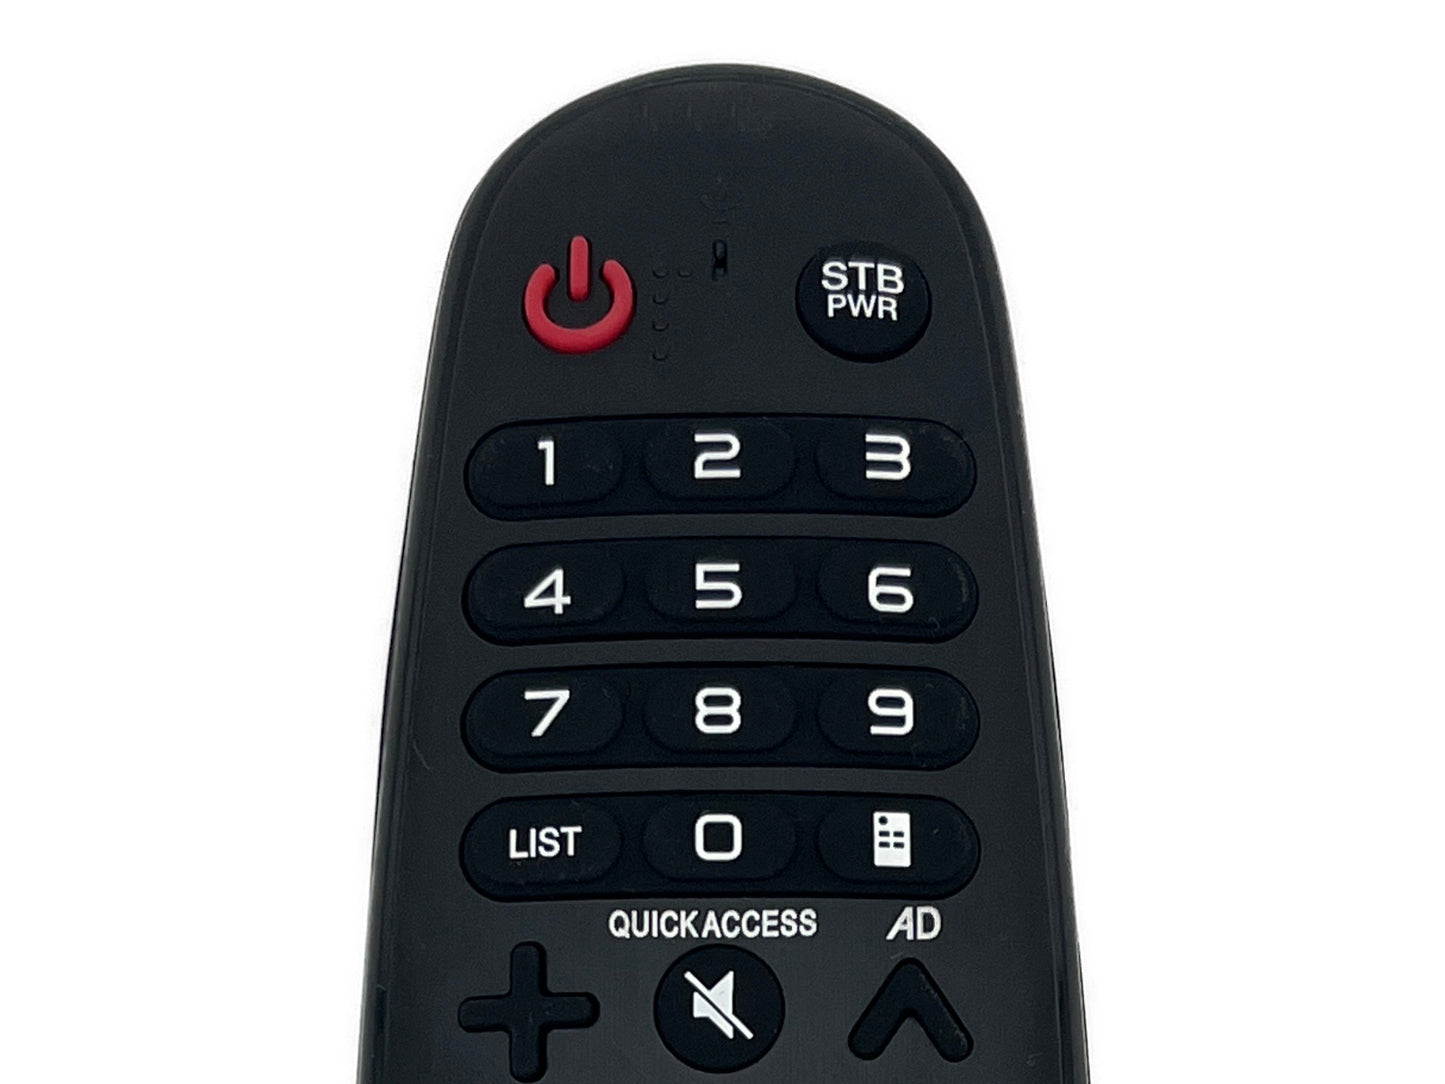 azurano Fernbedienung Magic Remote AN-MR18BA, AGF79298801 für 2018 LG Smart TV mit Sprachsteuerung, Mausfunktion, Direktasten für Netflix & Amazon Video - Bild 3